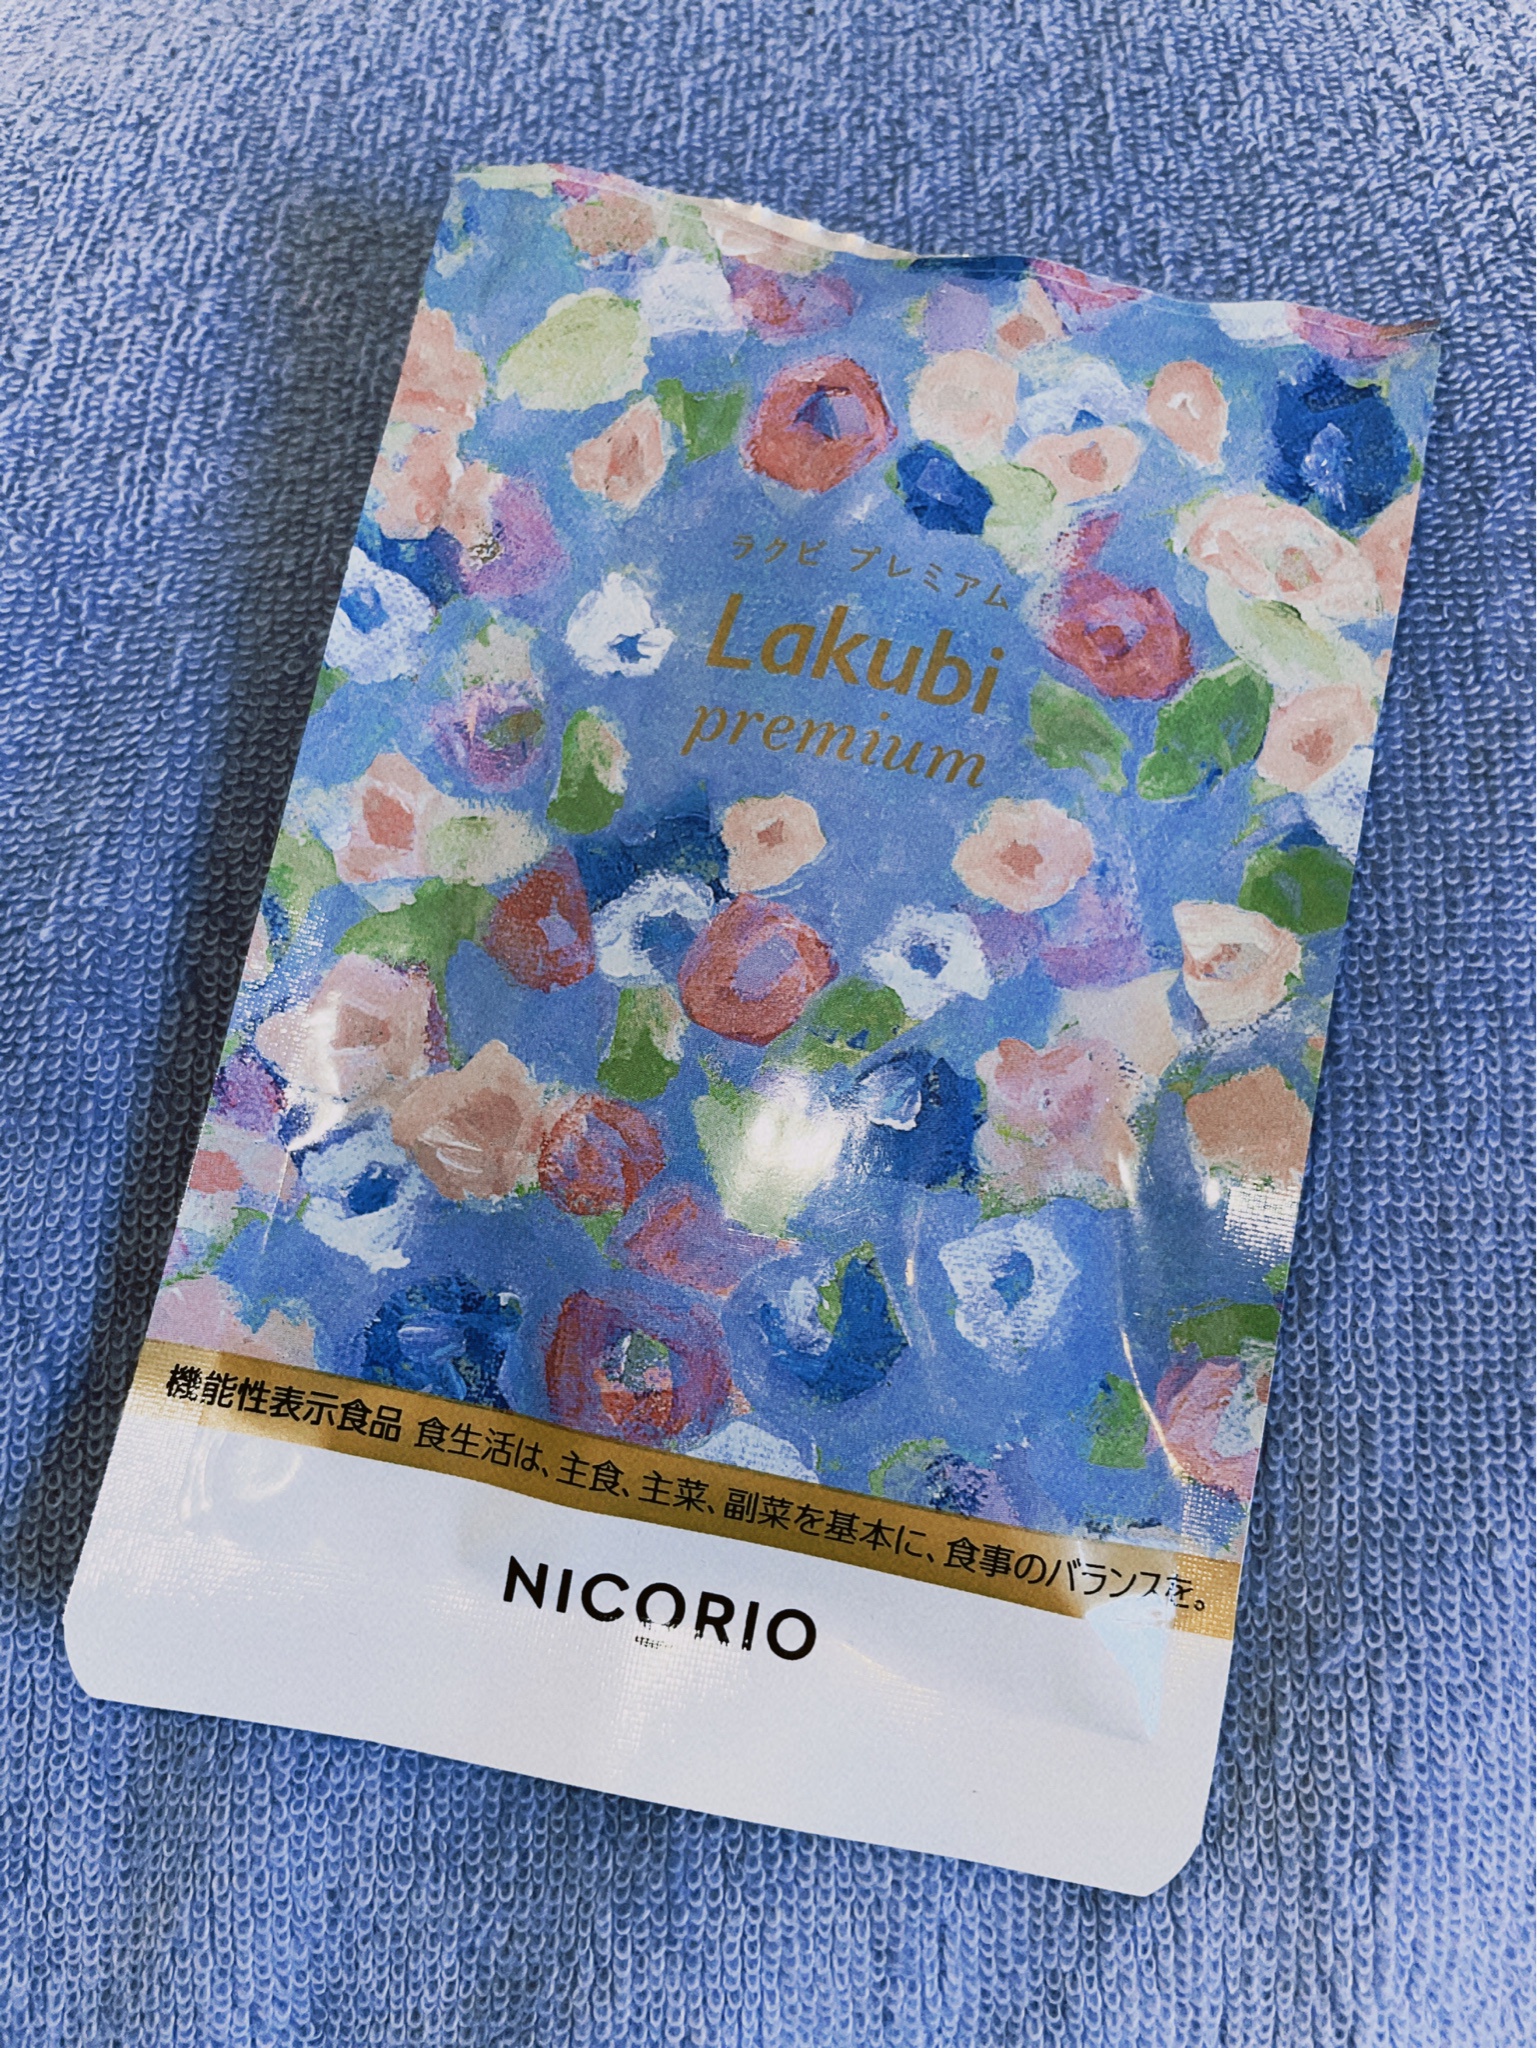 NICORIO Lakubi premium 8.556g - その他